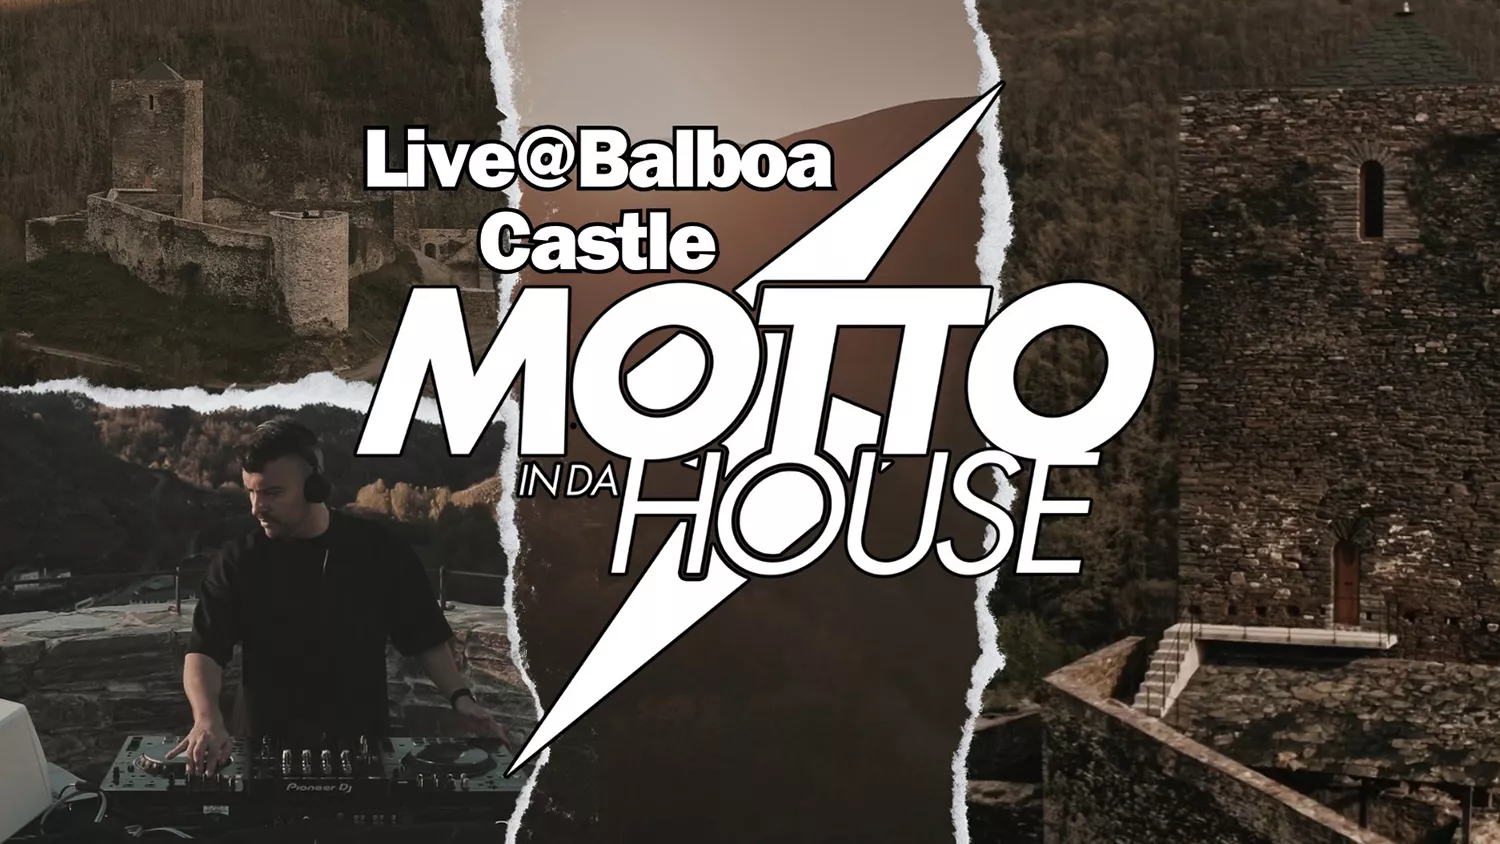 El Dj berciano Motto estrena música electrónica grabada en directo en el Castillo de Balboa